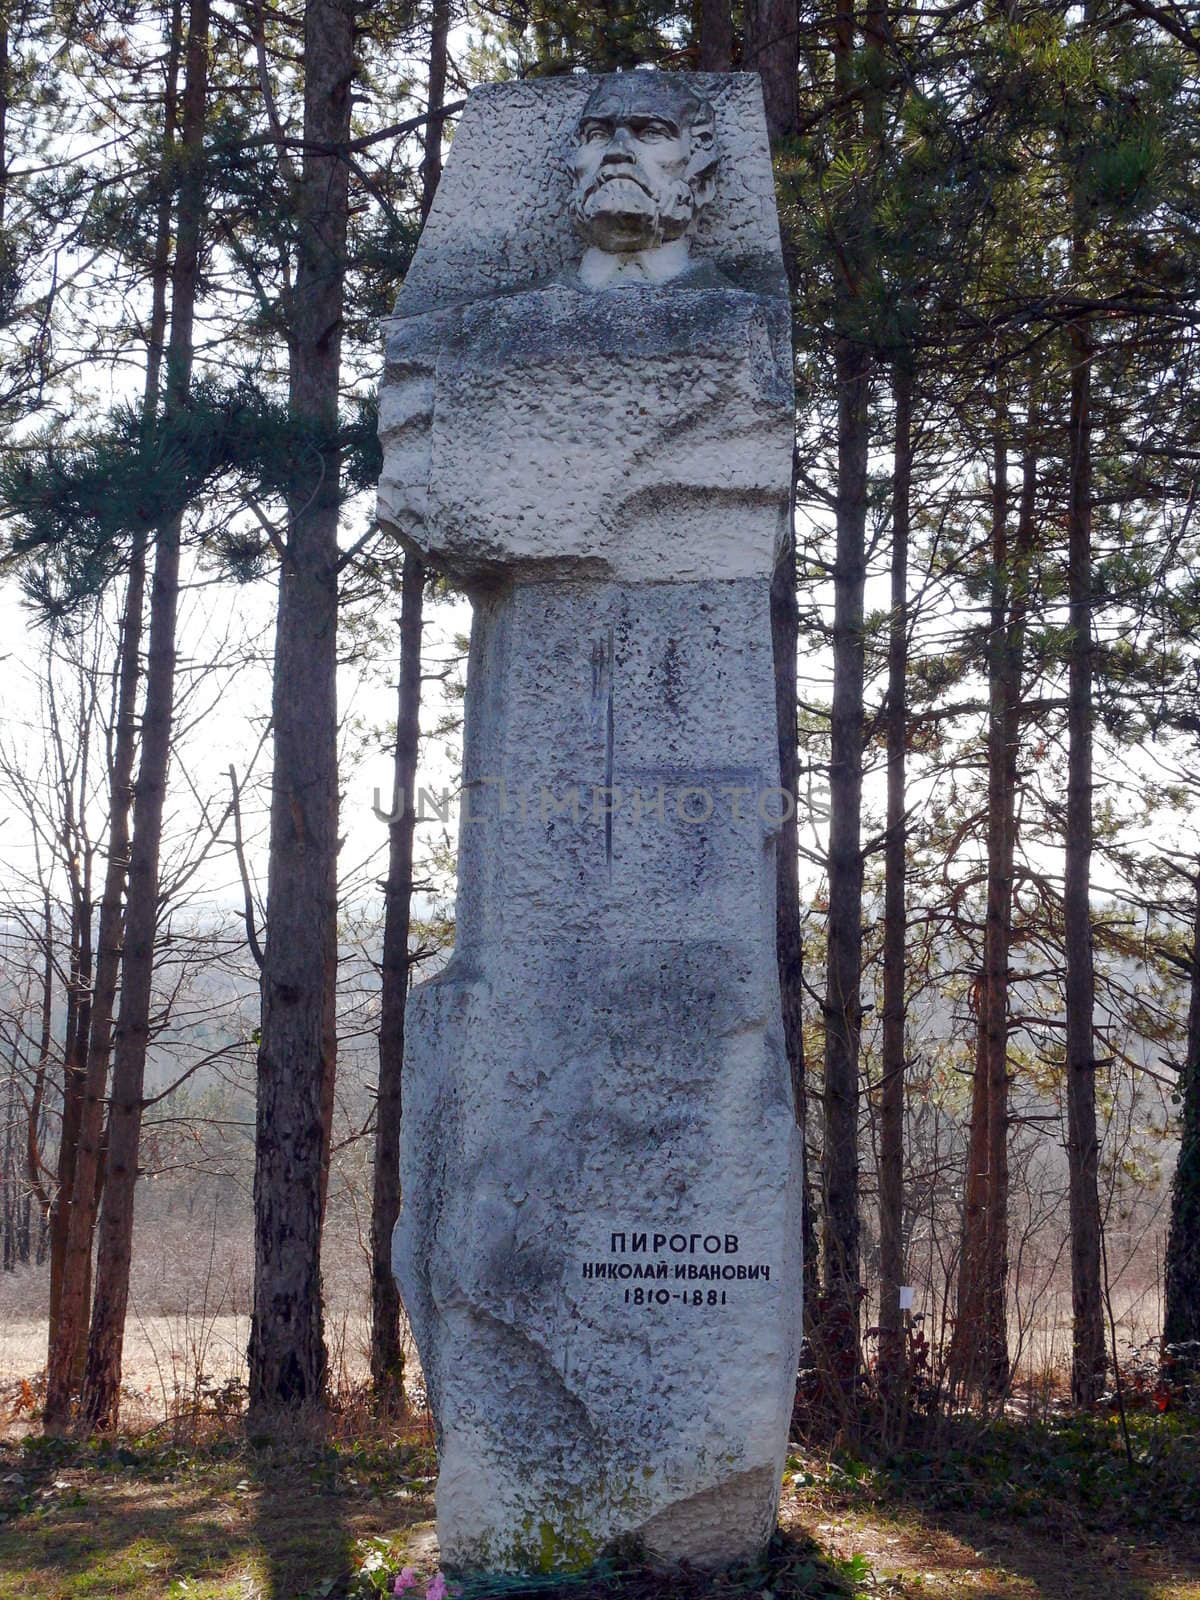 Monument of a Doctor Pirogov in skobelev Park. Pleven, Bulgaria